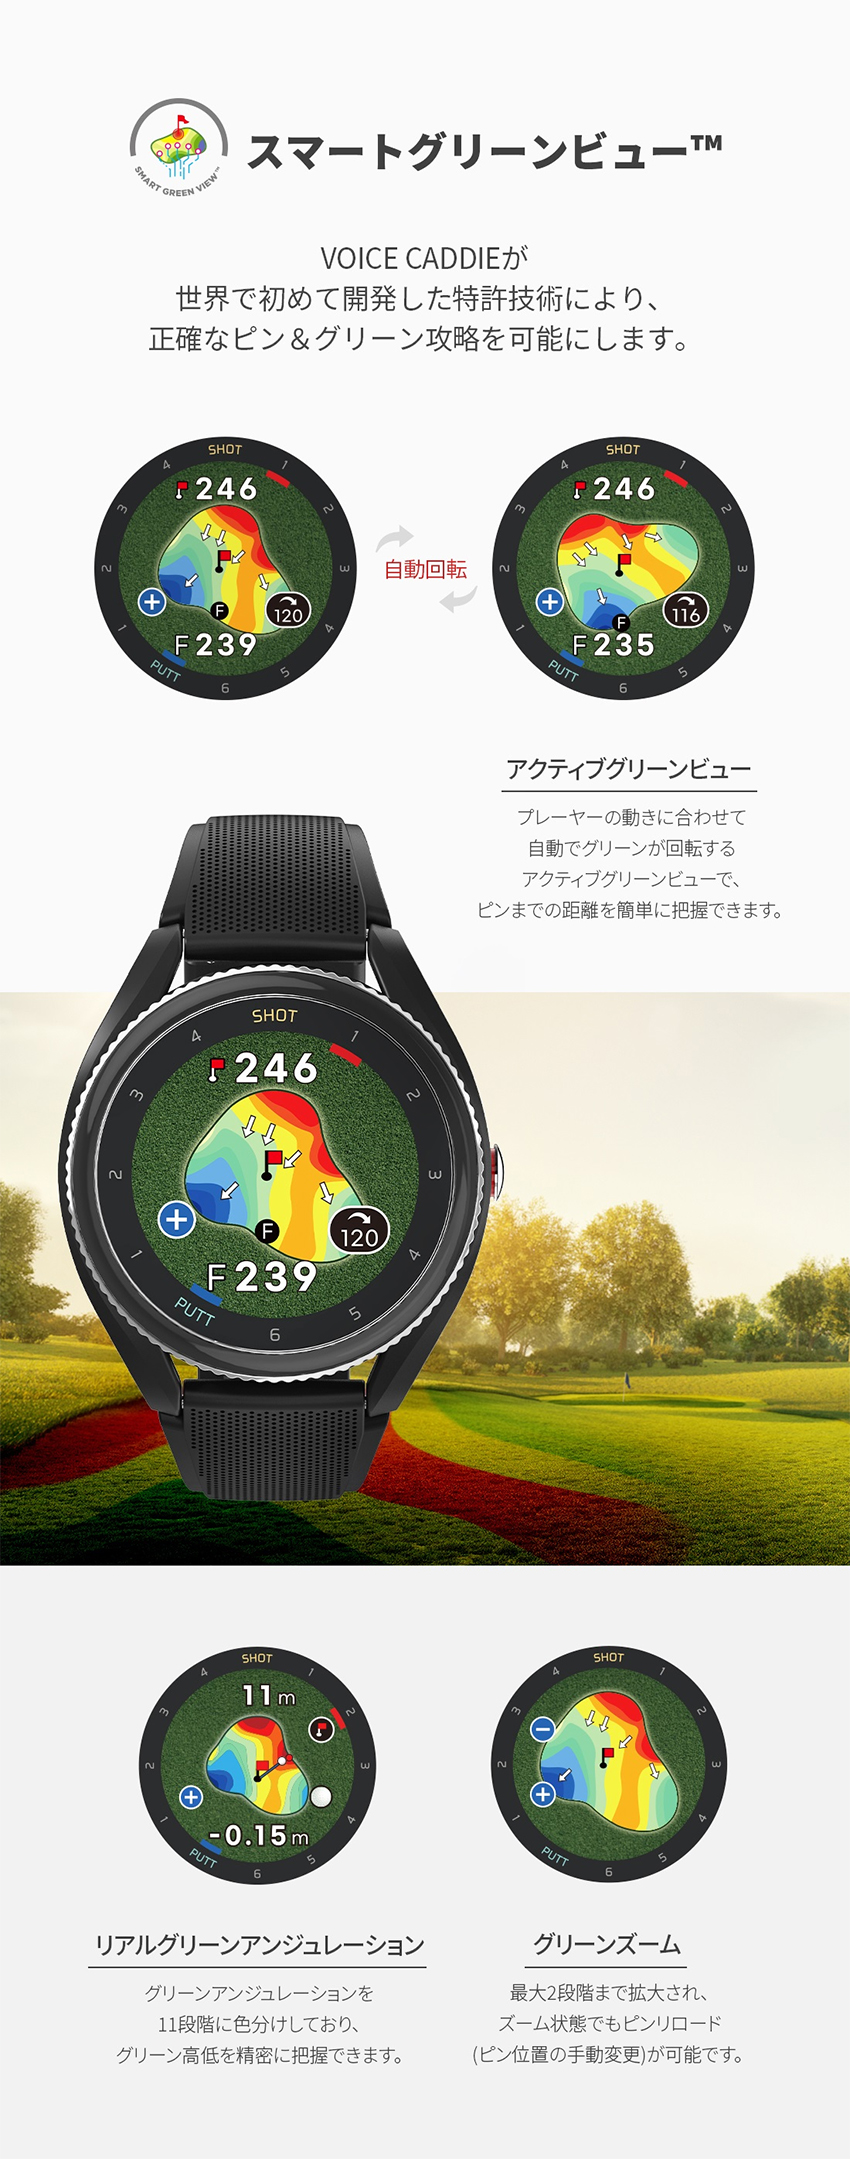 ジオテックゴルフ公式通販サイト / ボイスキャディ GPS時計型距離計 T9